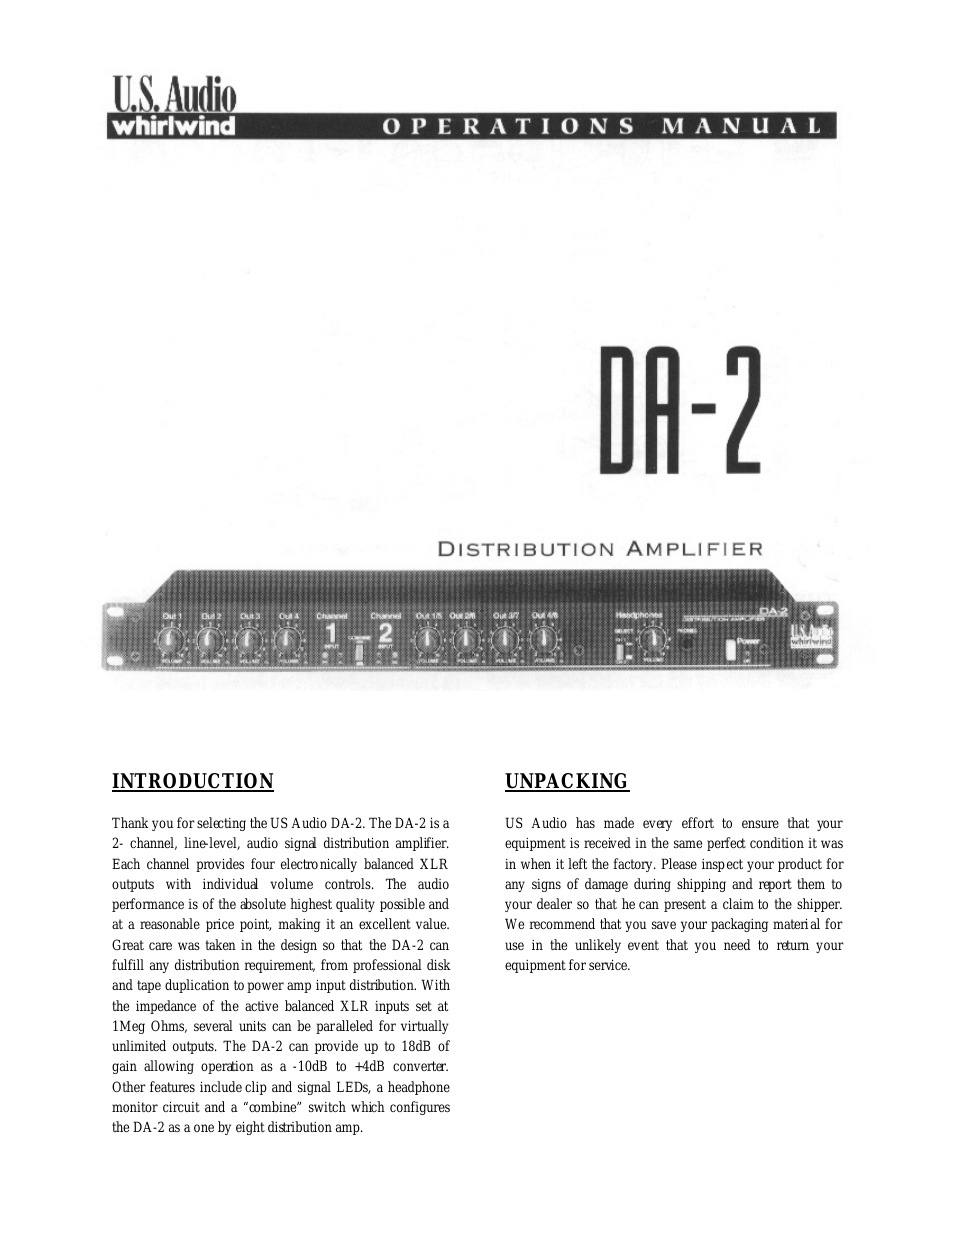 DA-2